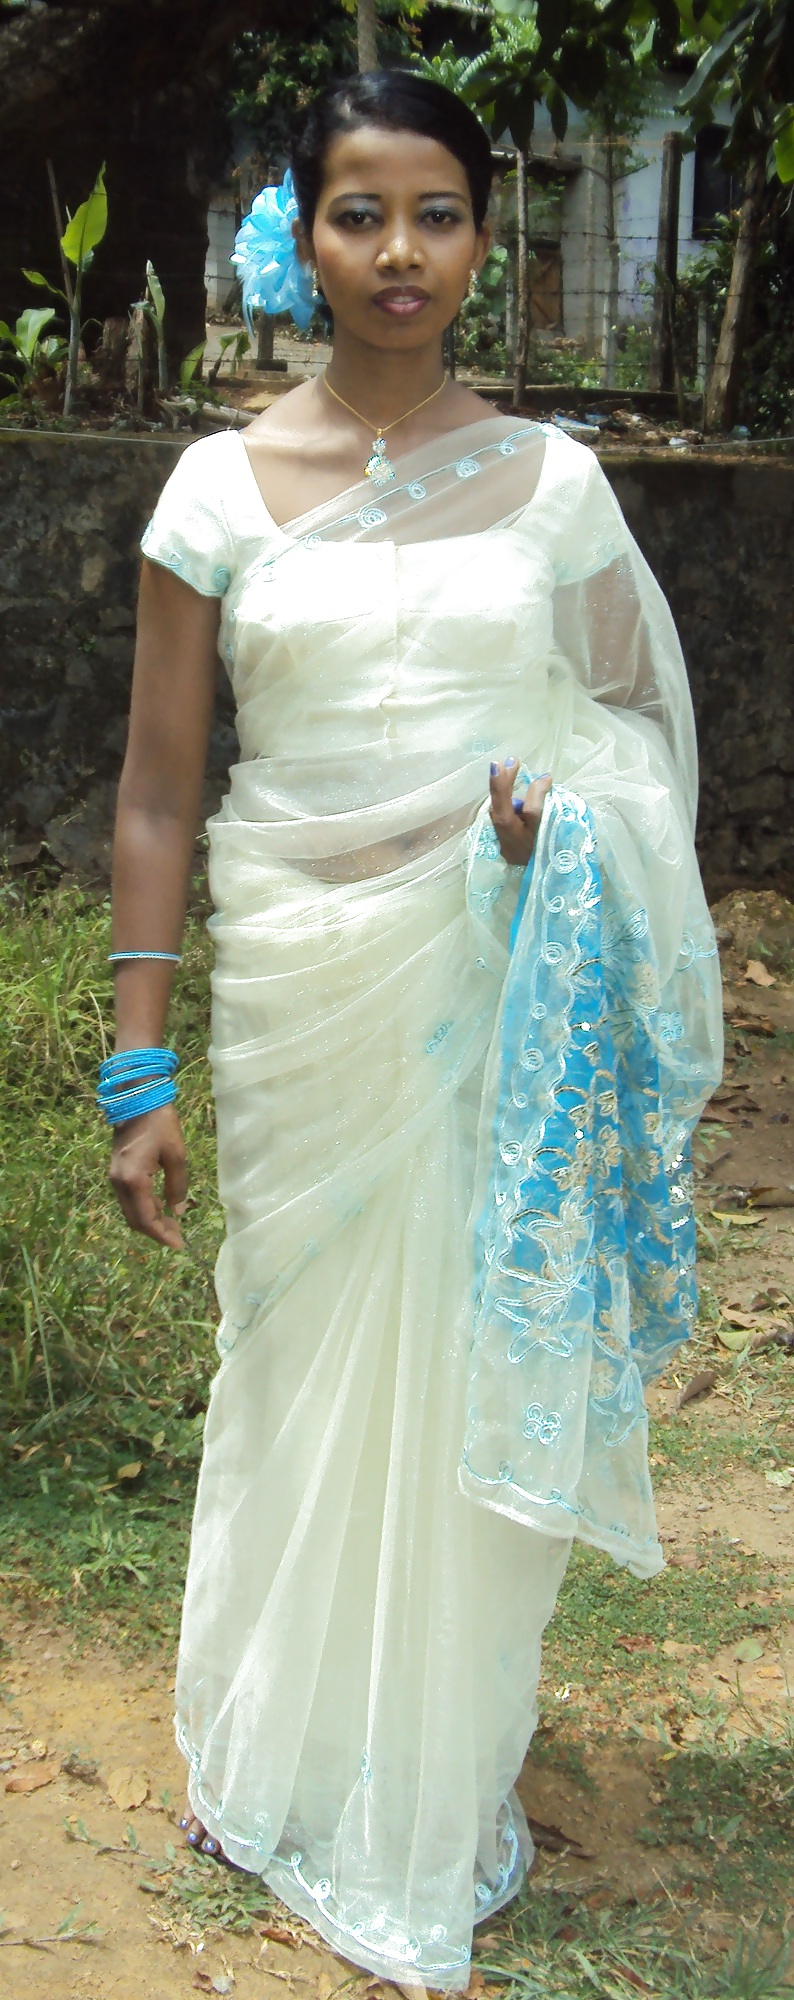 Femme Srilankaise Exposée #21620191